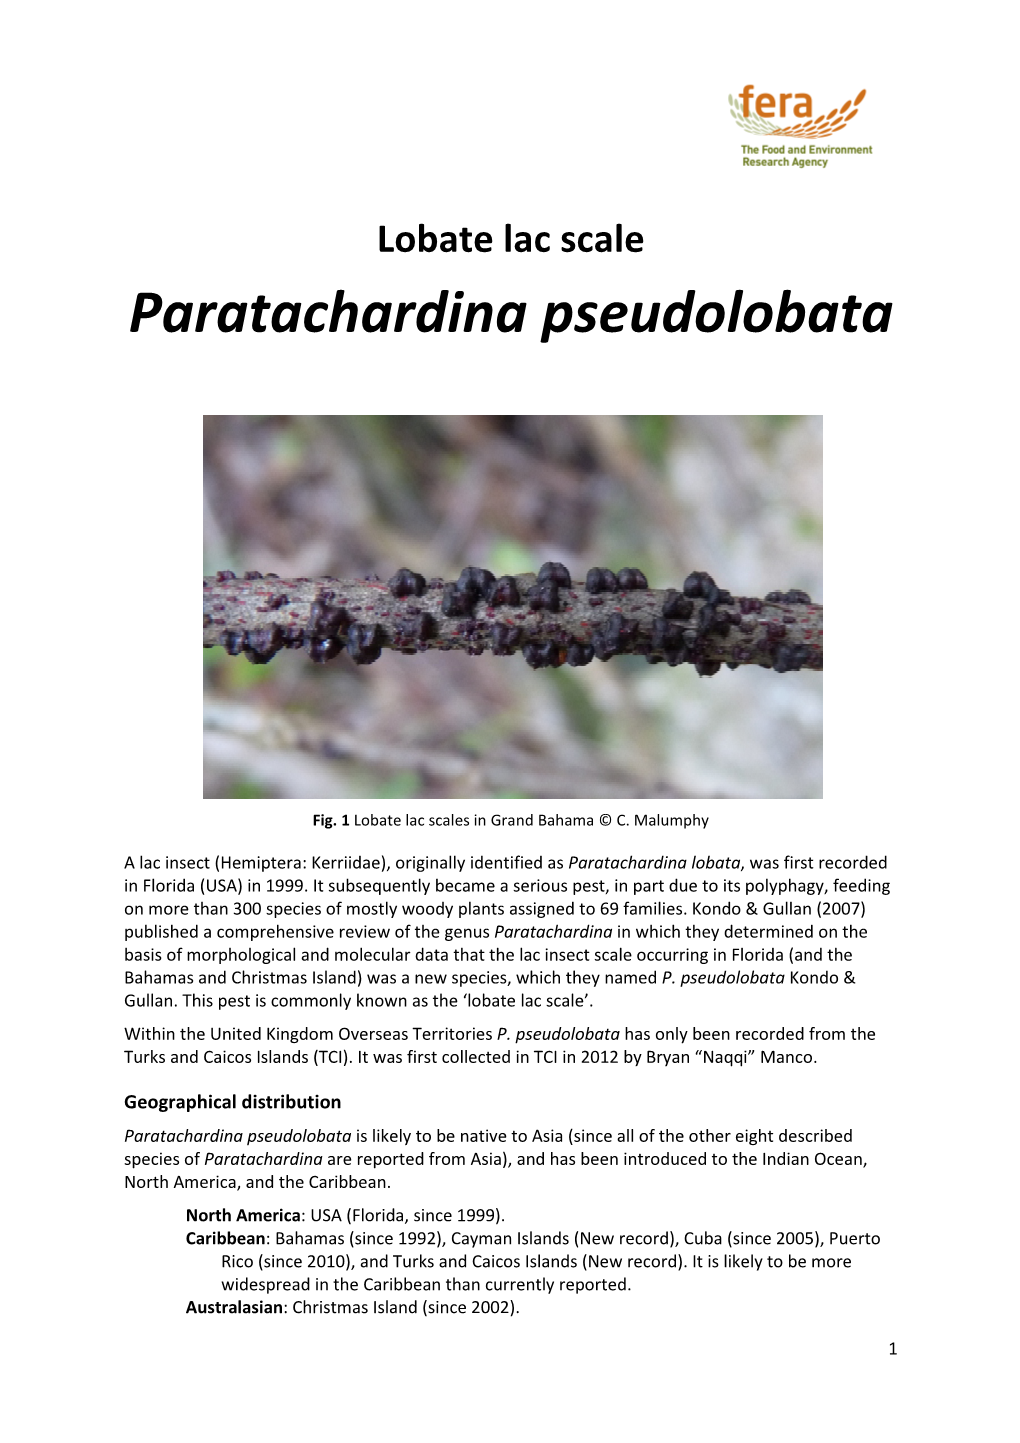 HEM Paratachardina Pseudolobata Datasheet V2 13062014